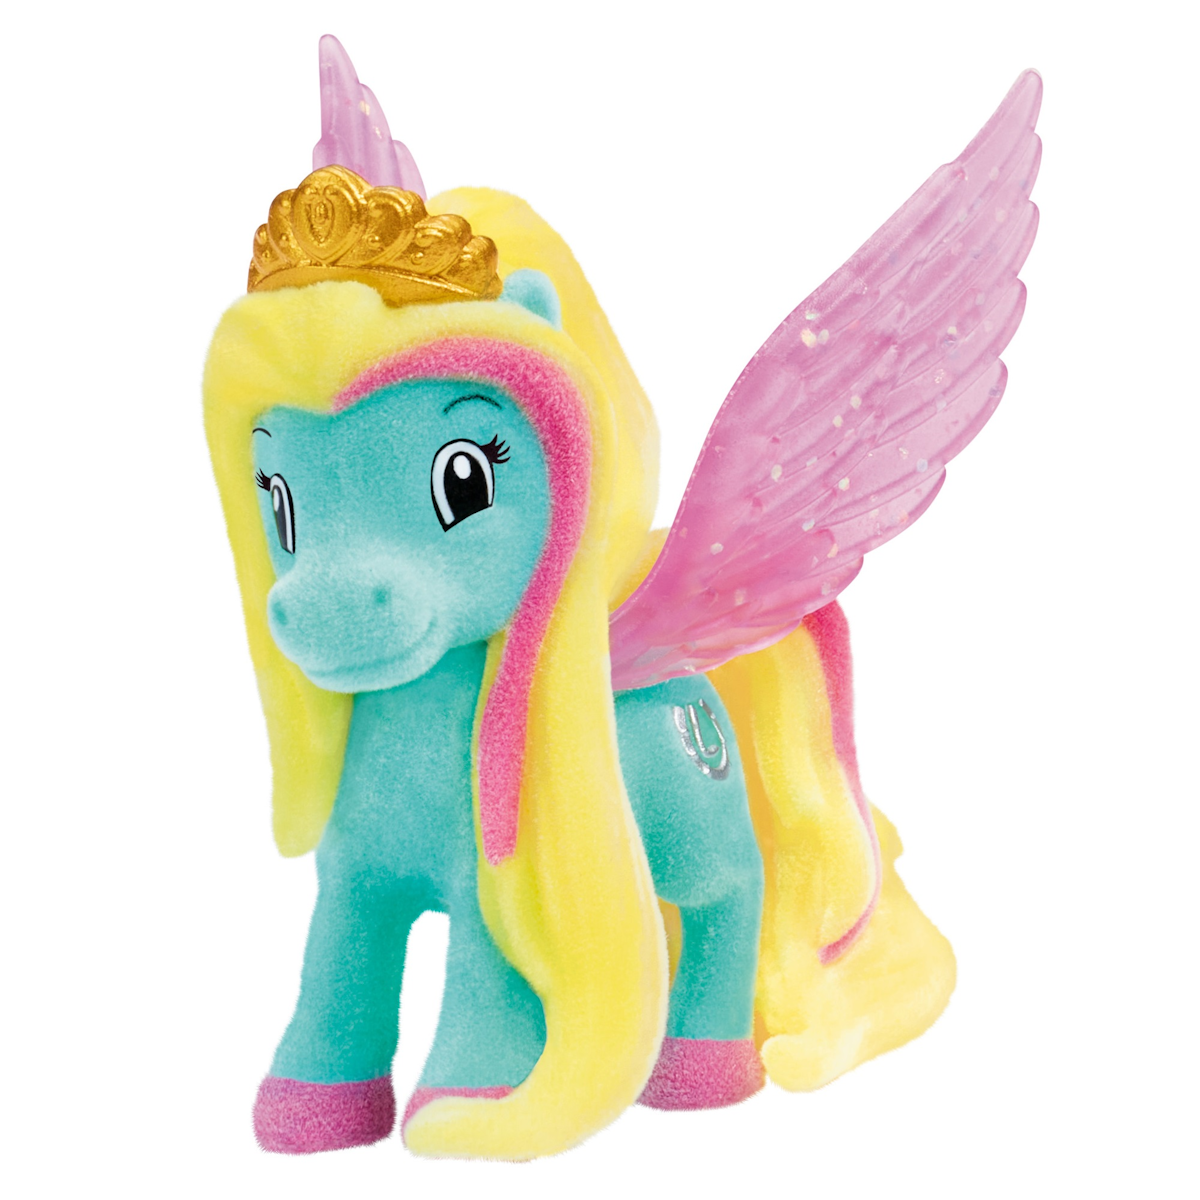 Pegasus-Ponys verbreiten magischen Glanz im Handel